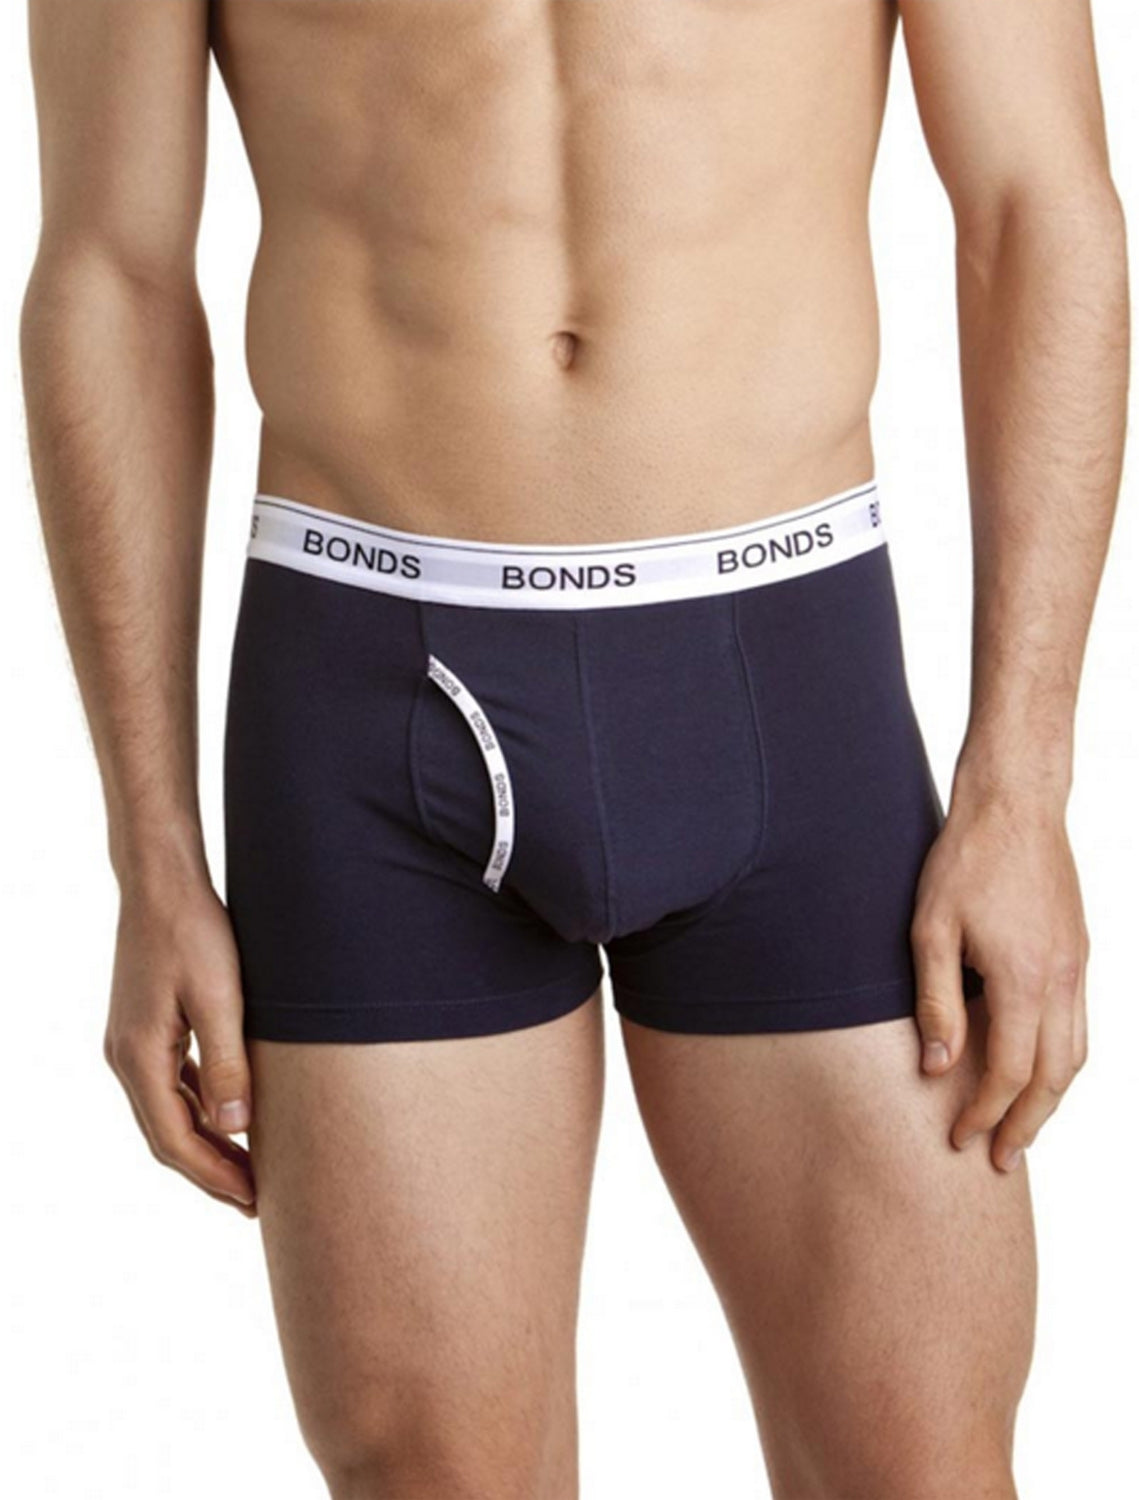 Bonds Guyfront Trunks S Ink Mens Underwear by Bonds | The Bloke Shop